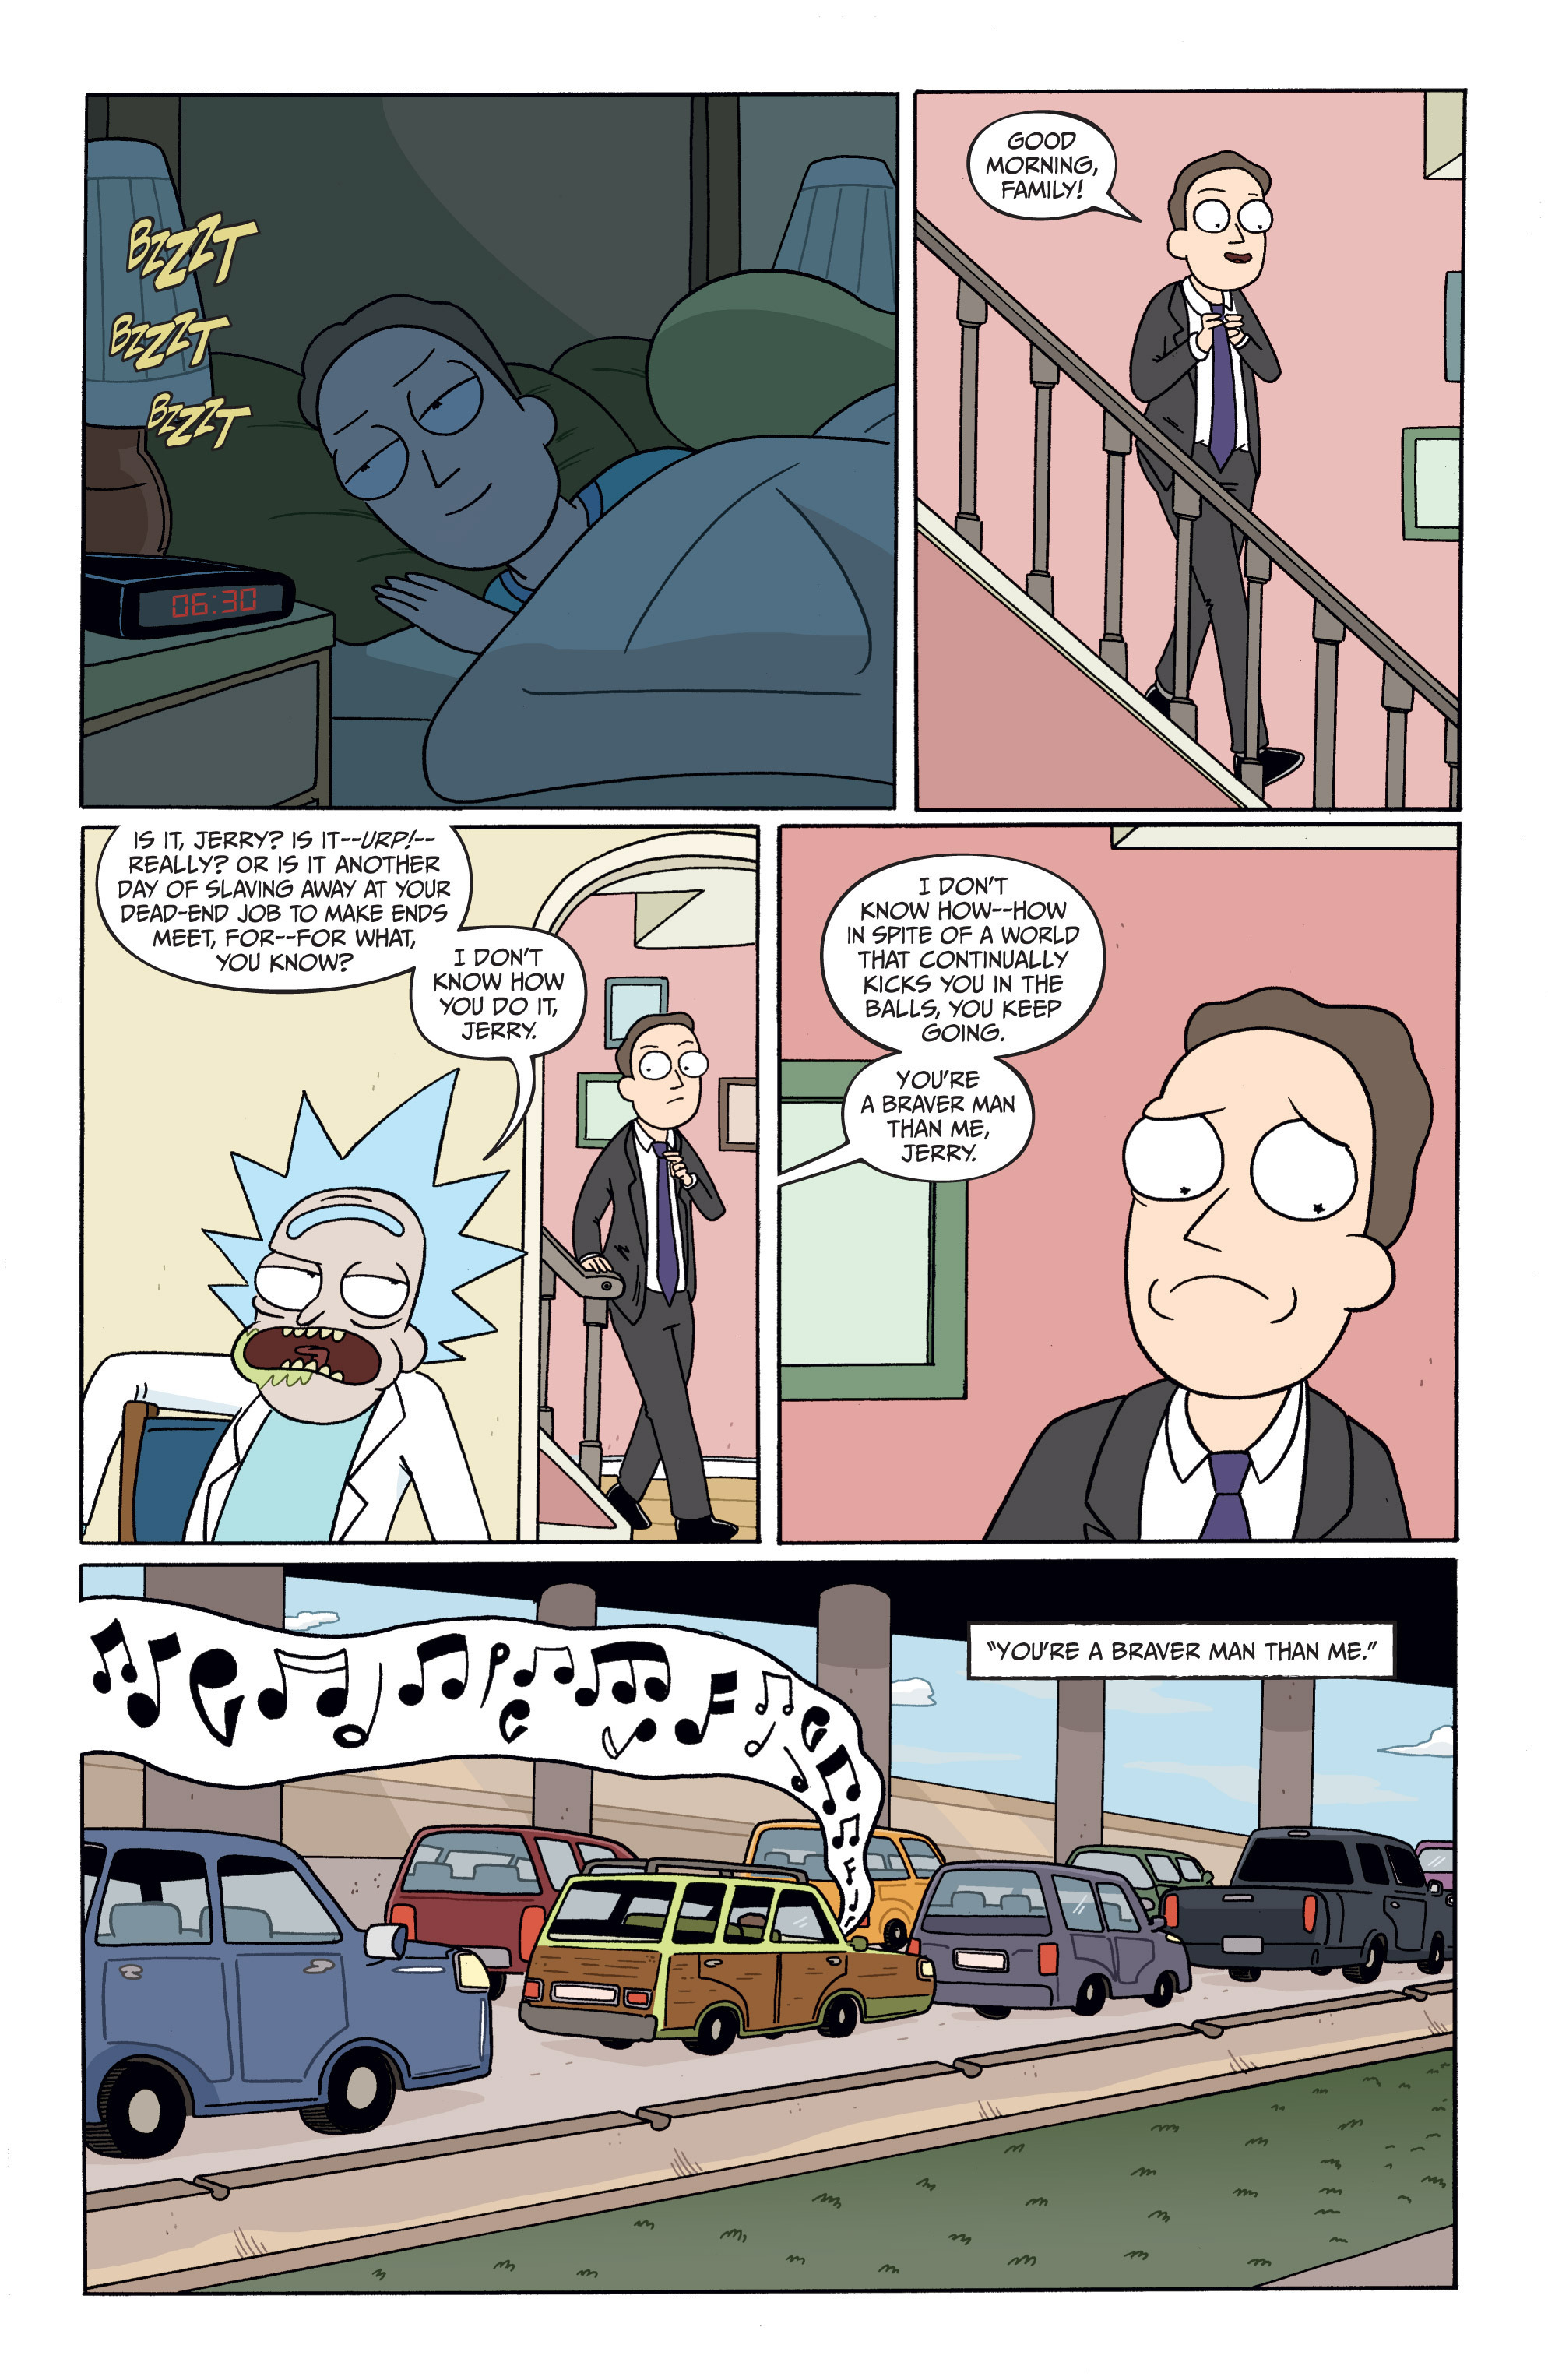 Rick And Morty Issue 4 Read Rick And Morty Issue 4 Comic Online In